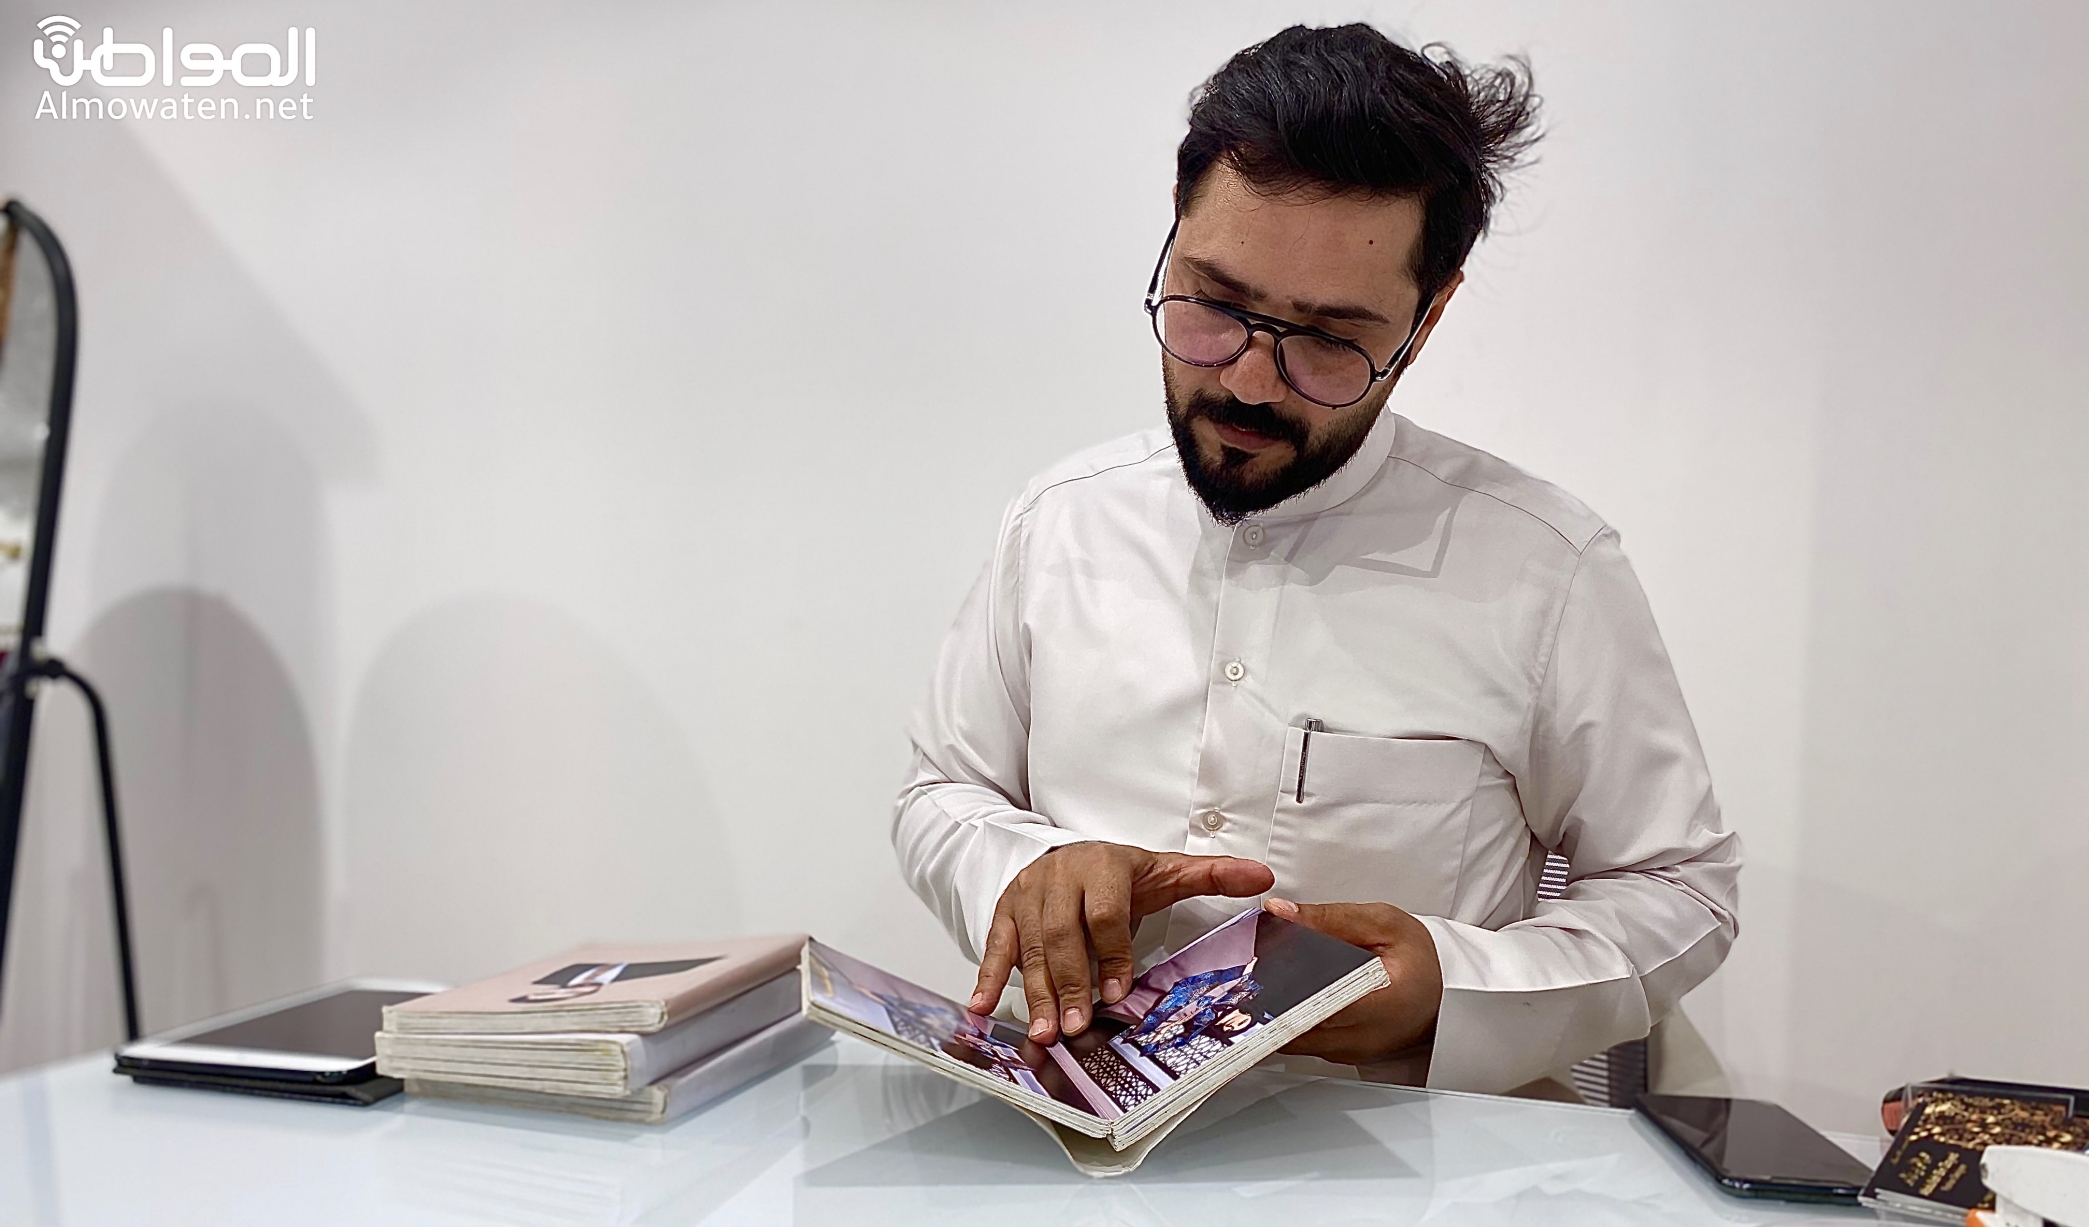 مصمم الأزياء عبدالله بن زايد يروي لـ”المواطن” قصة الانطلاق من حفر الباطن إلى العالمية